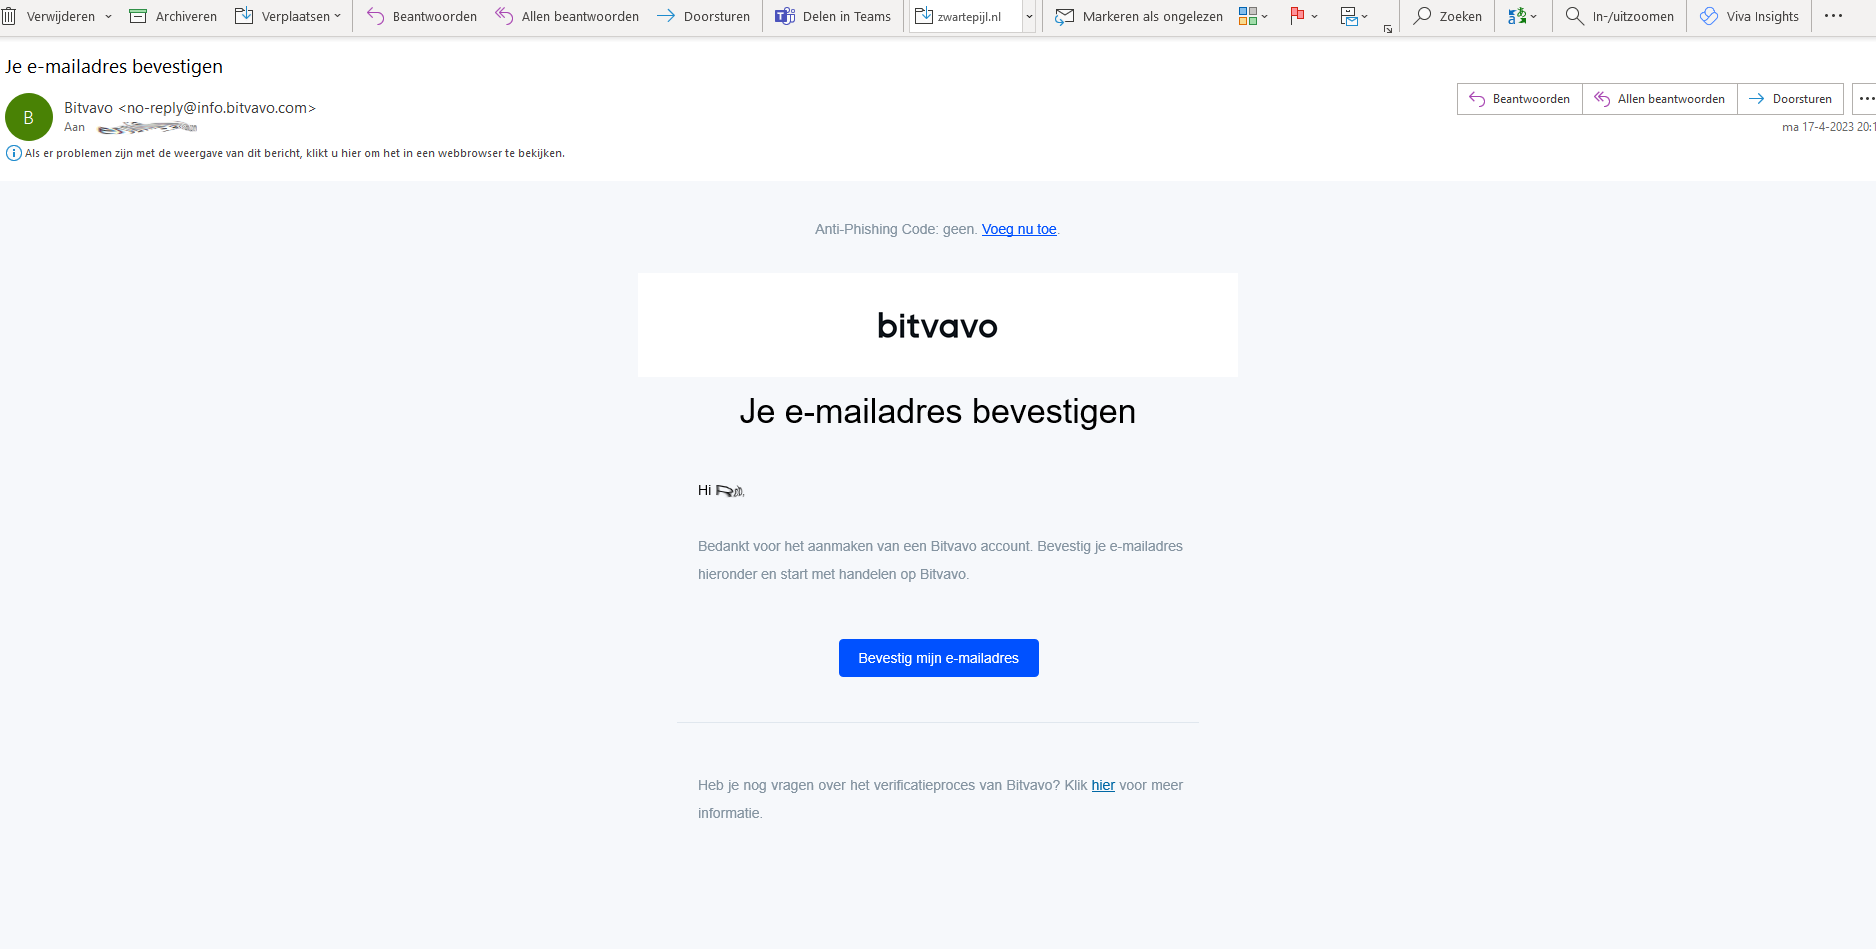 Bitvavo - email bevestigen emailadres